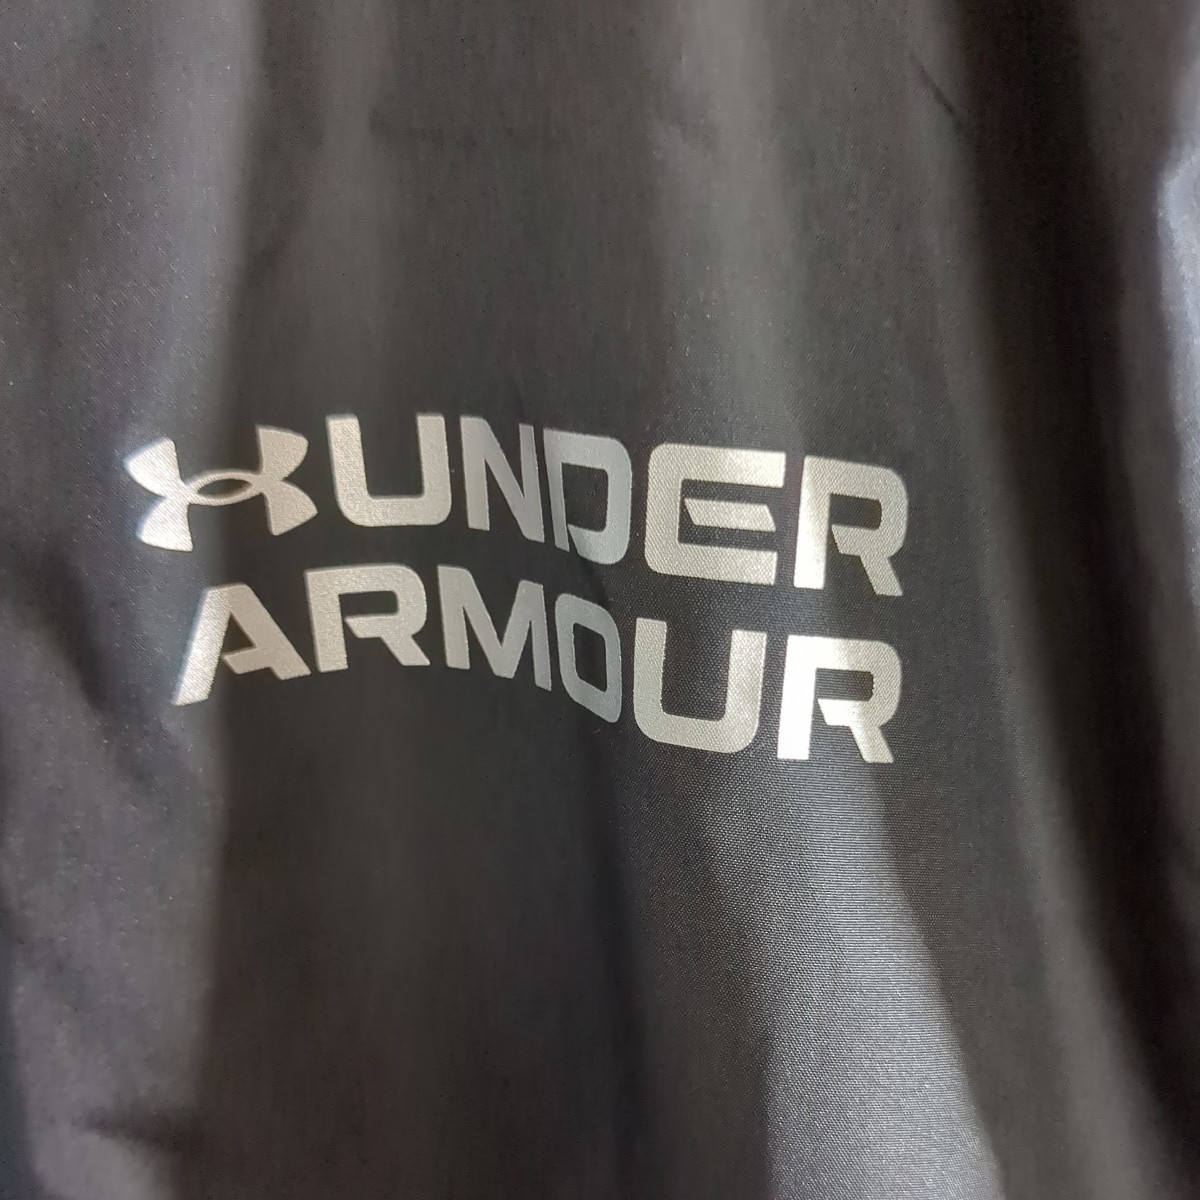 UNDER ARMOUR Under Armor тренировочный Parker нейлон переключатель защищающий от холода с изнанки флис жакет джерси серый черный мужской L размер 